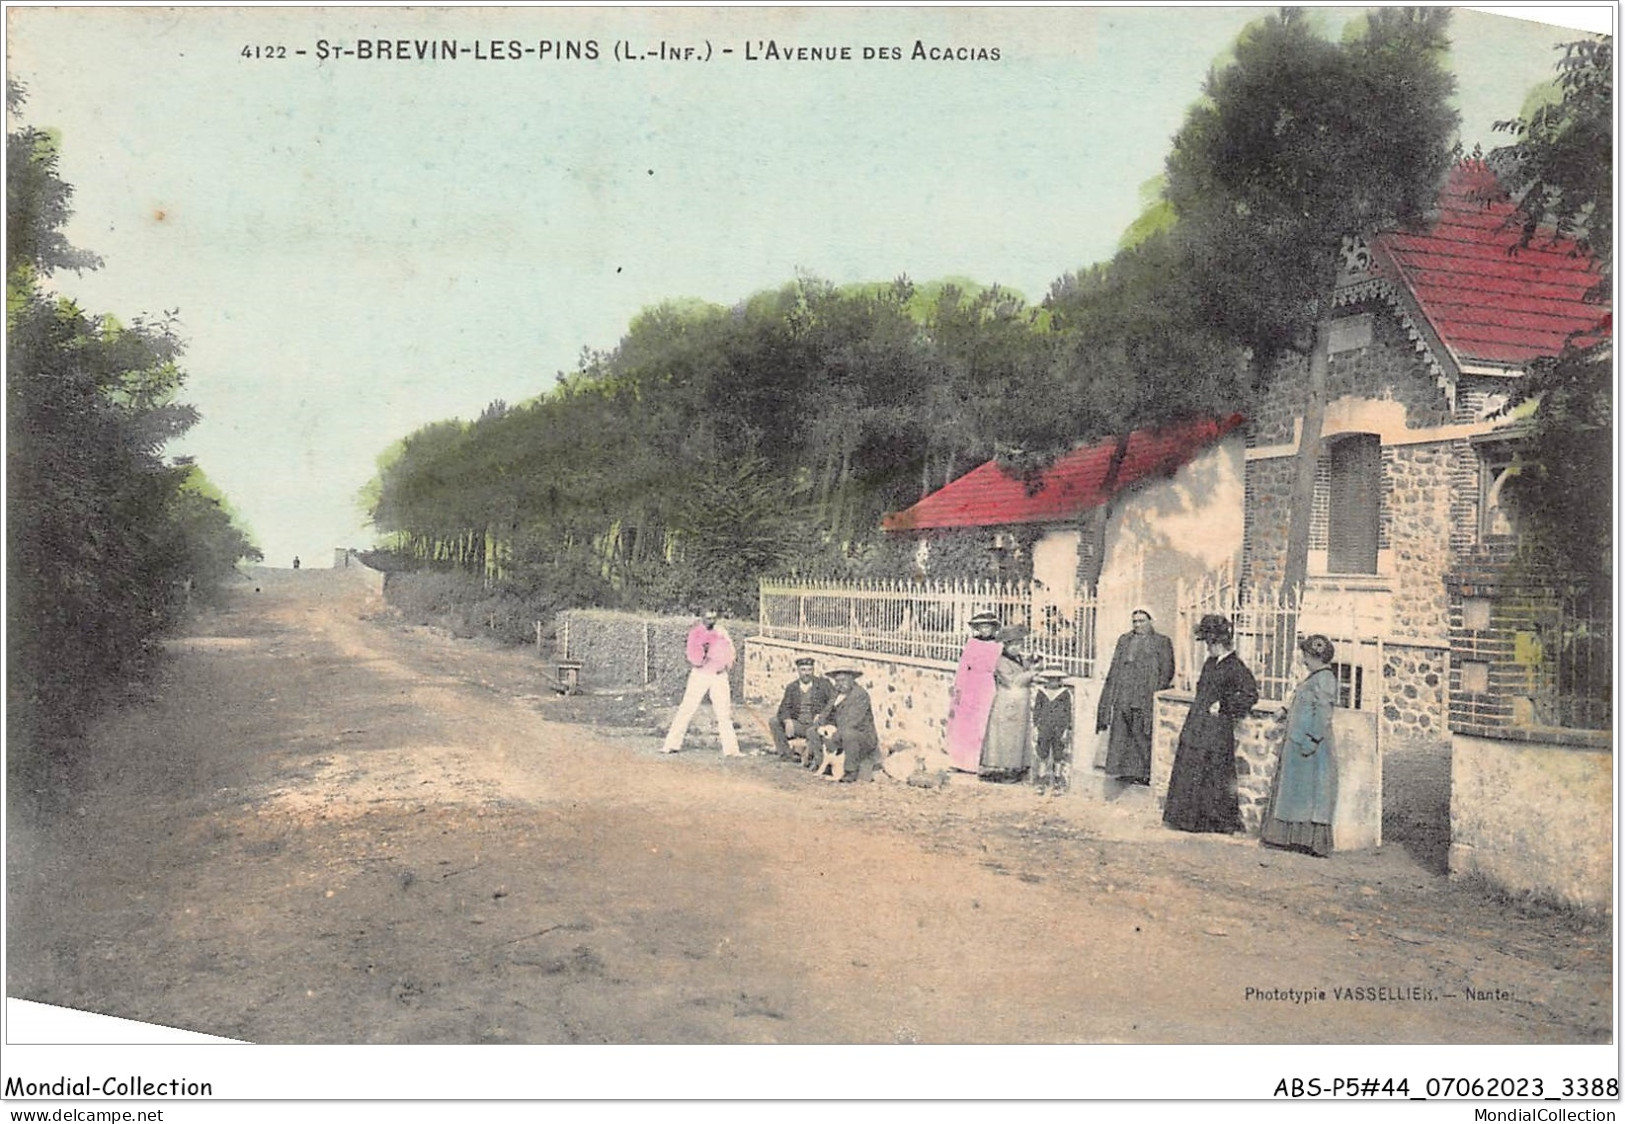 ABSP5-44-0431 - SAINT-BREVIN-LES-PINS - L'Avenue Des Acacias VILLA - Saint-Brevin-les-Pins